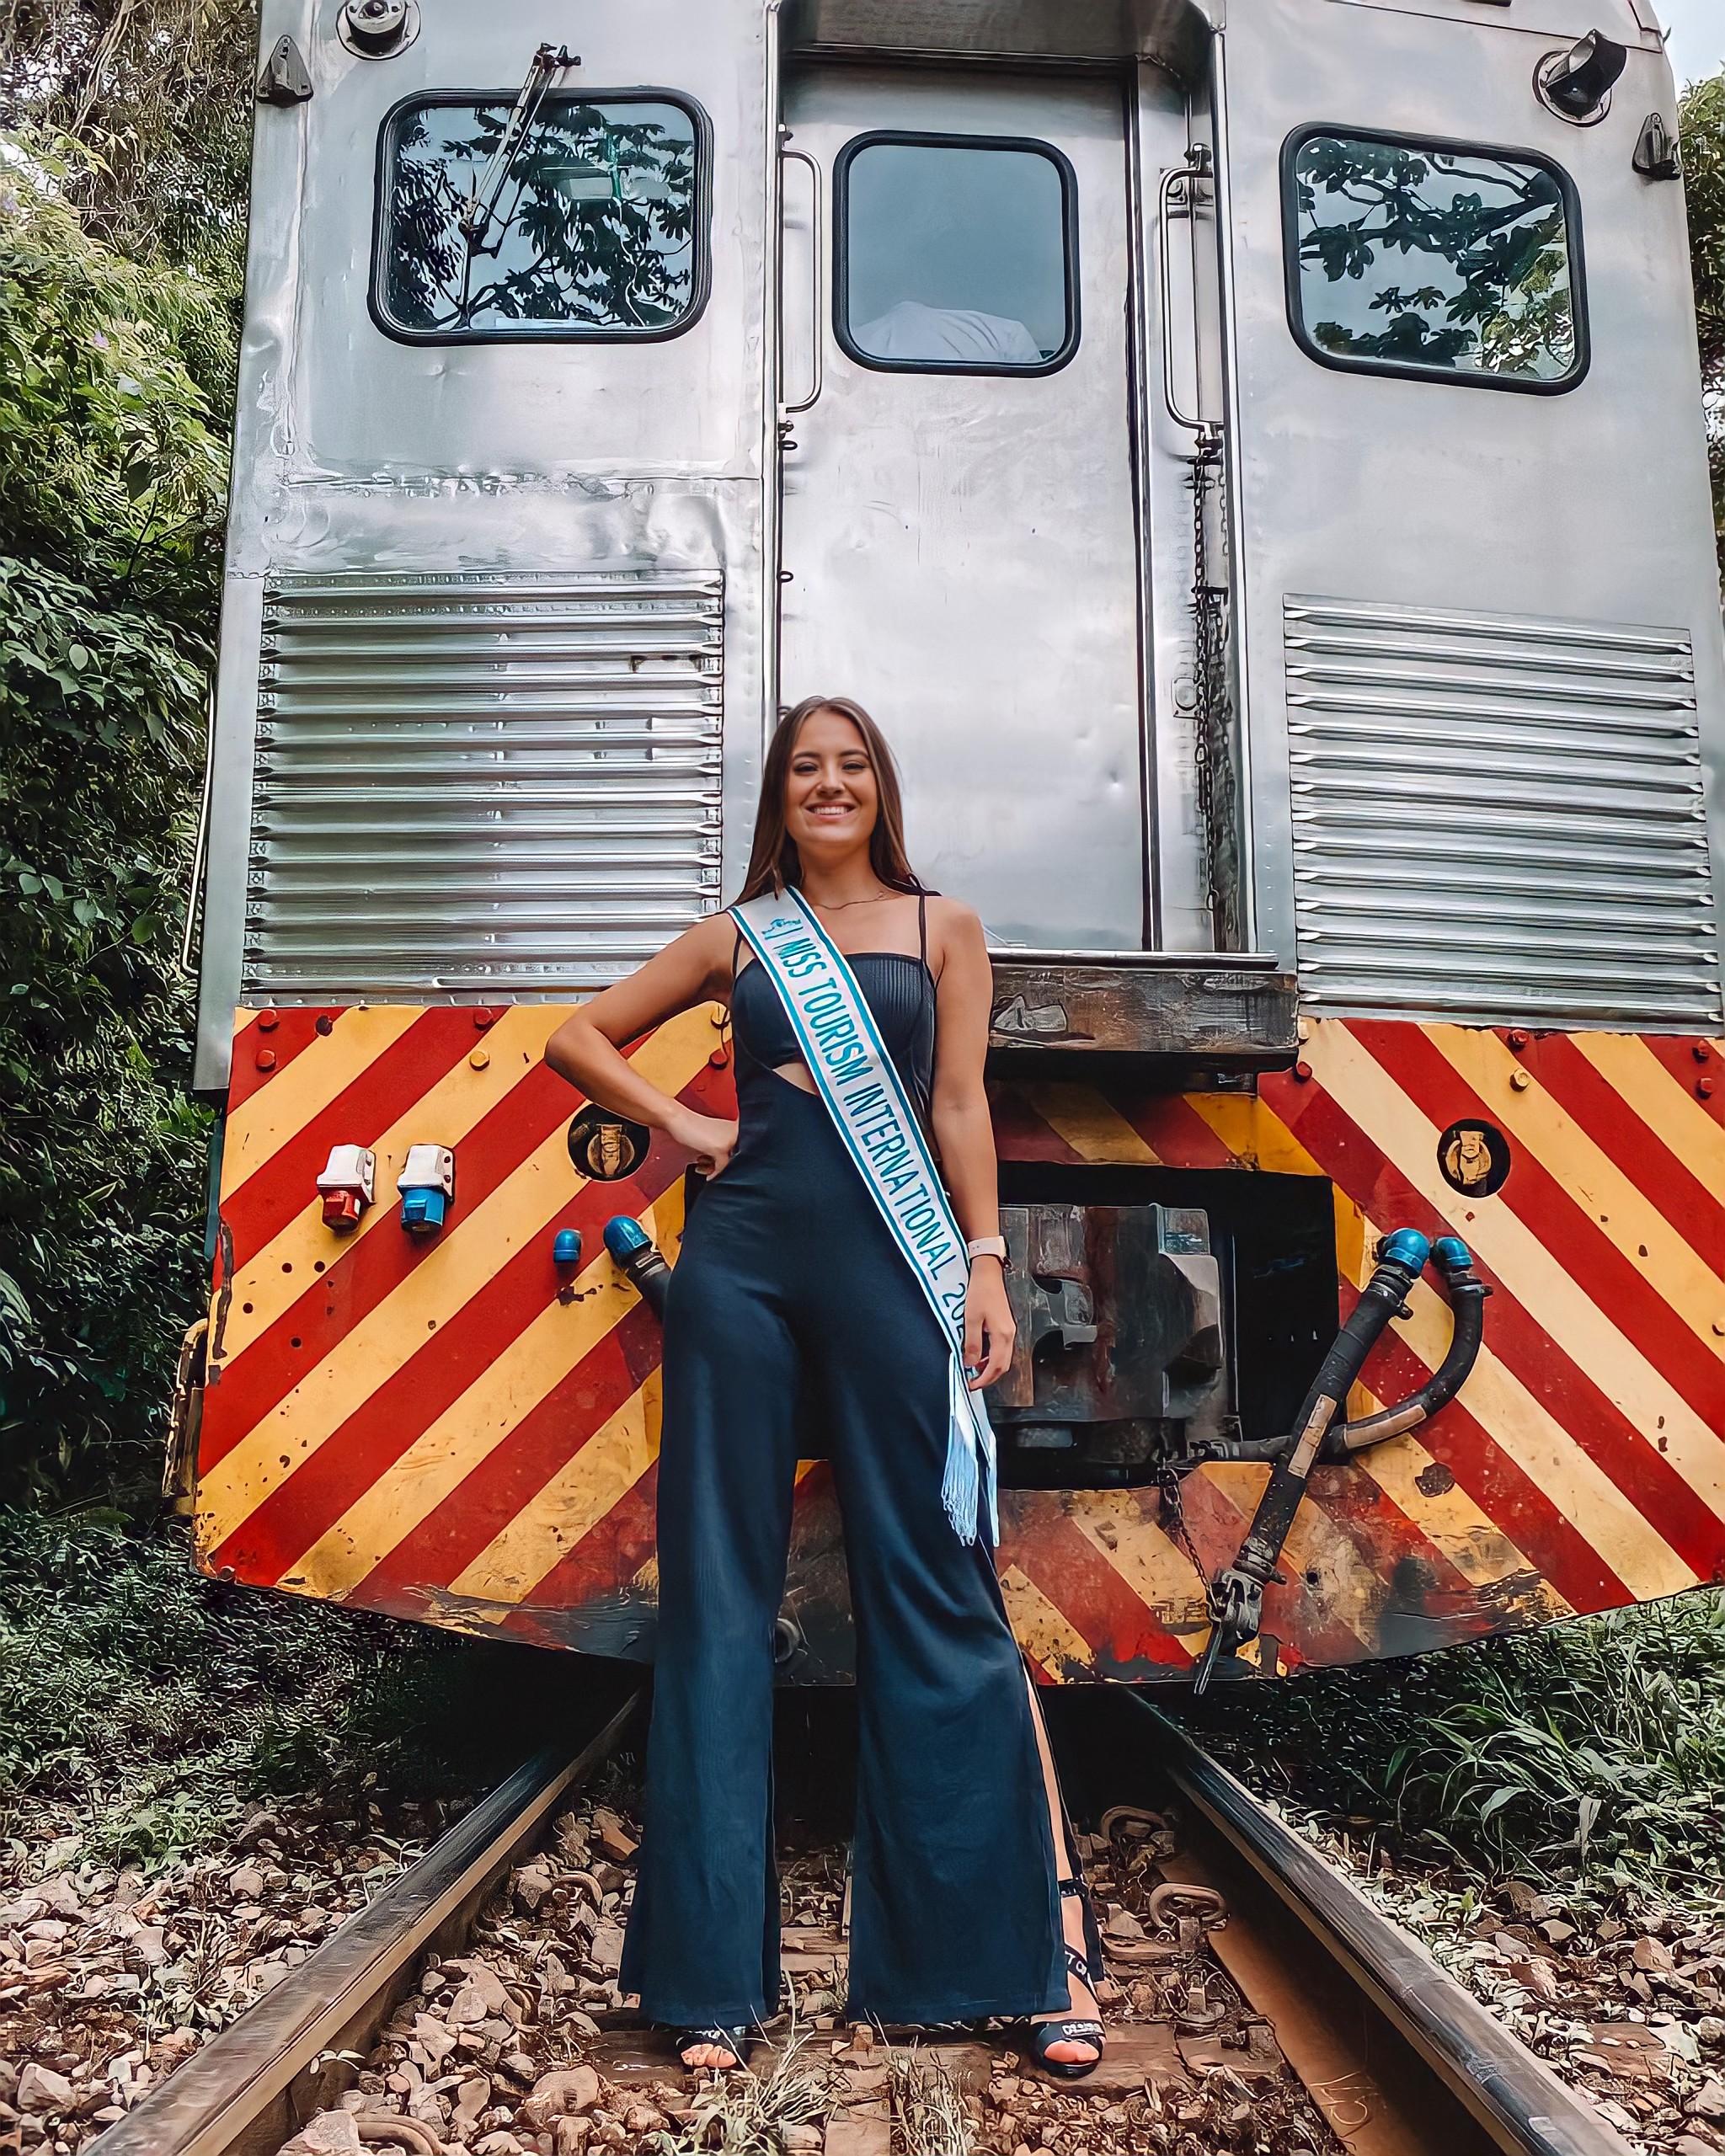 Passeio de trem de luxo é primeiro roteiro de Miss Turismo Internacional 2021